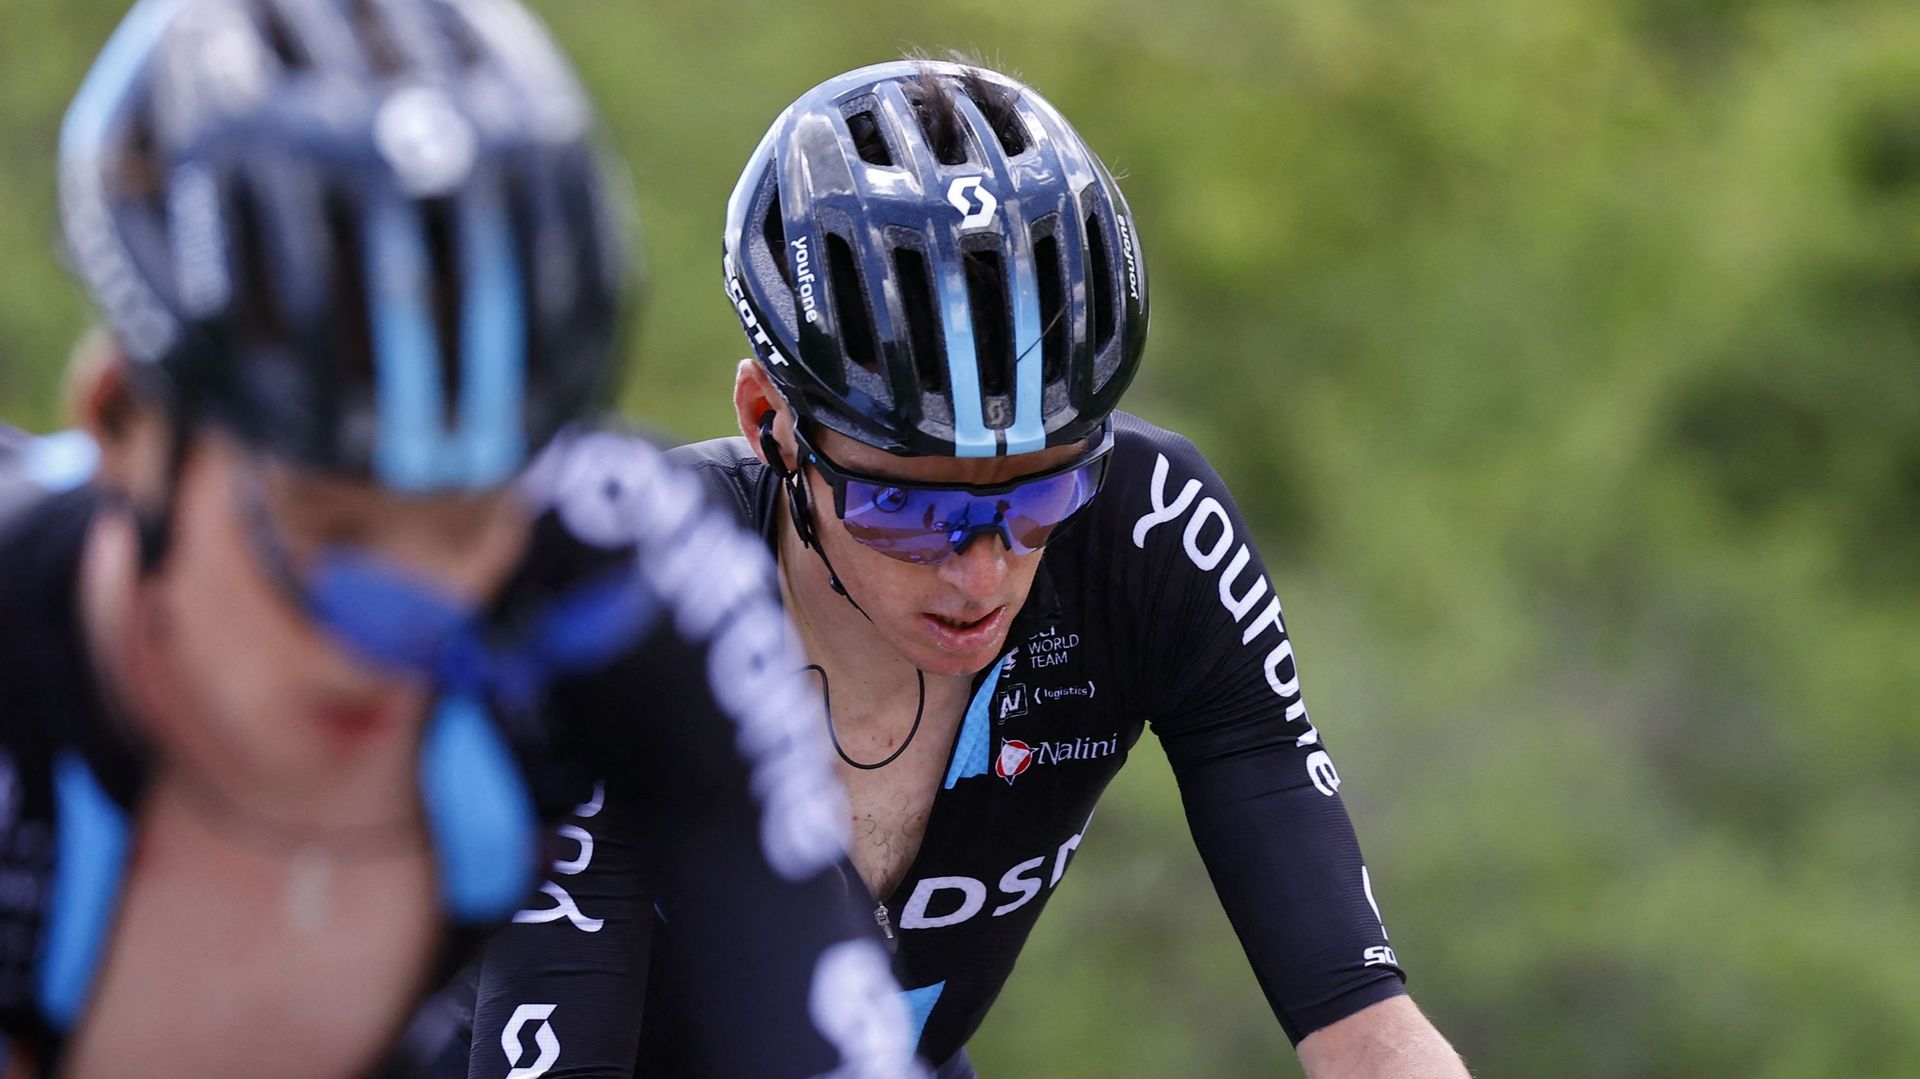 Giro : Romain Bardet, 4e du Général et candidat au podium, abandonne sur la route de Cuneo